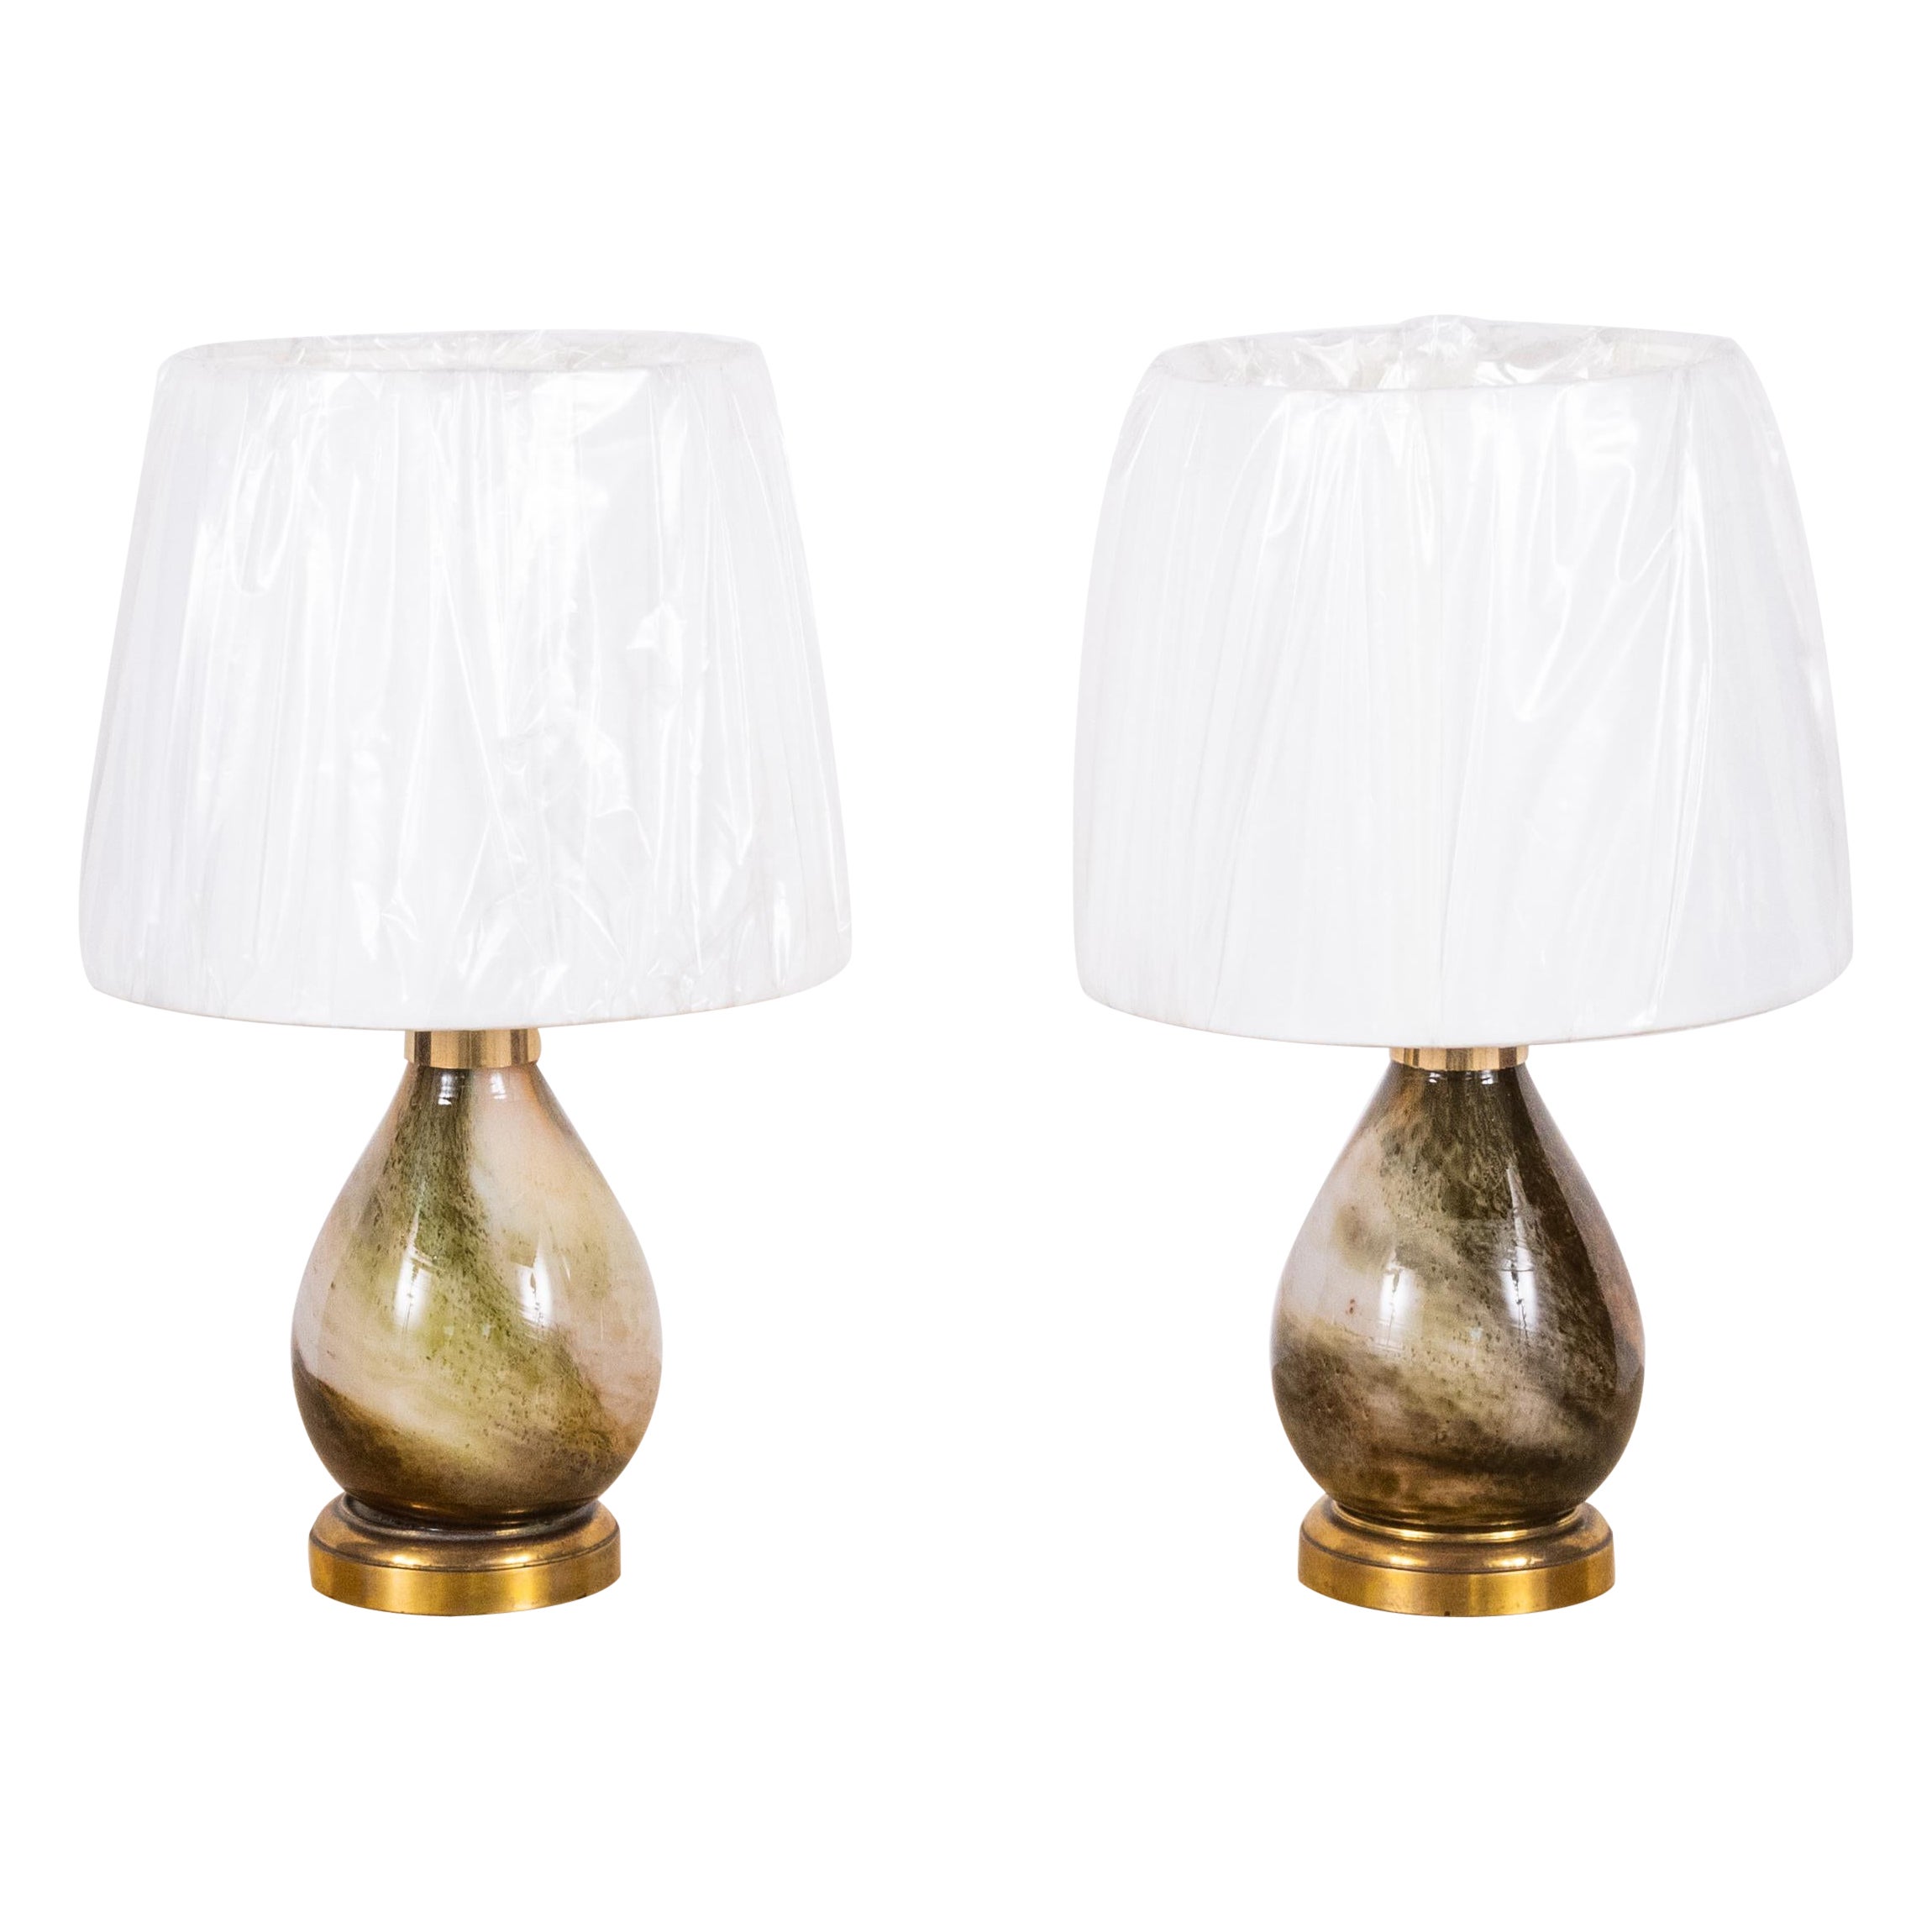 Paire de petites lampes en verre de Murano avec abat-jours en soie personnalisés